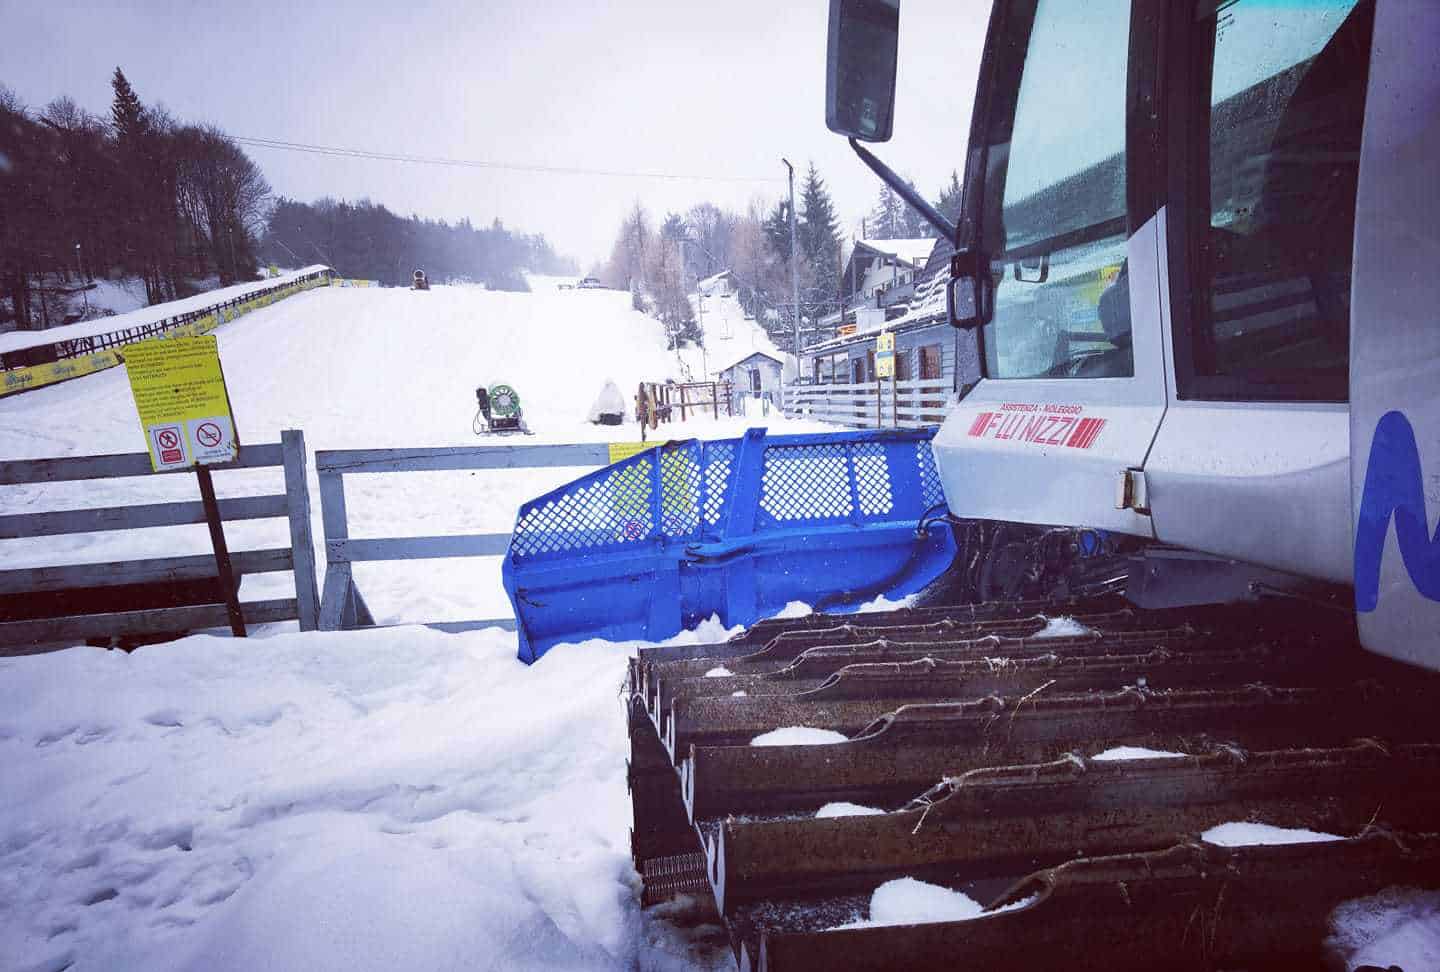 video zăpada s-a depus la munte. în ce stațiuni din românia se poate schia